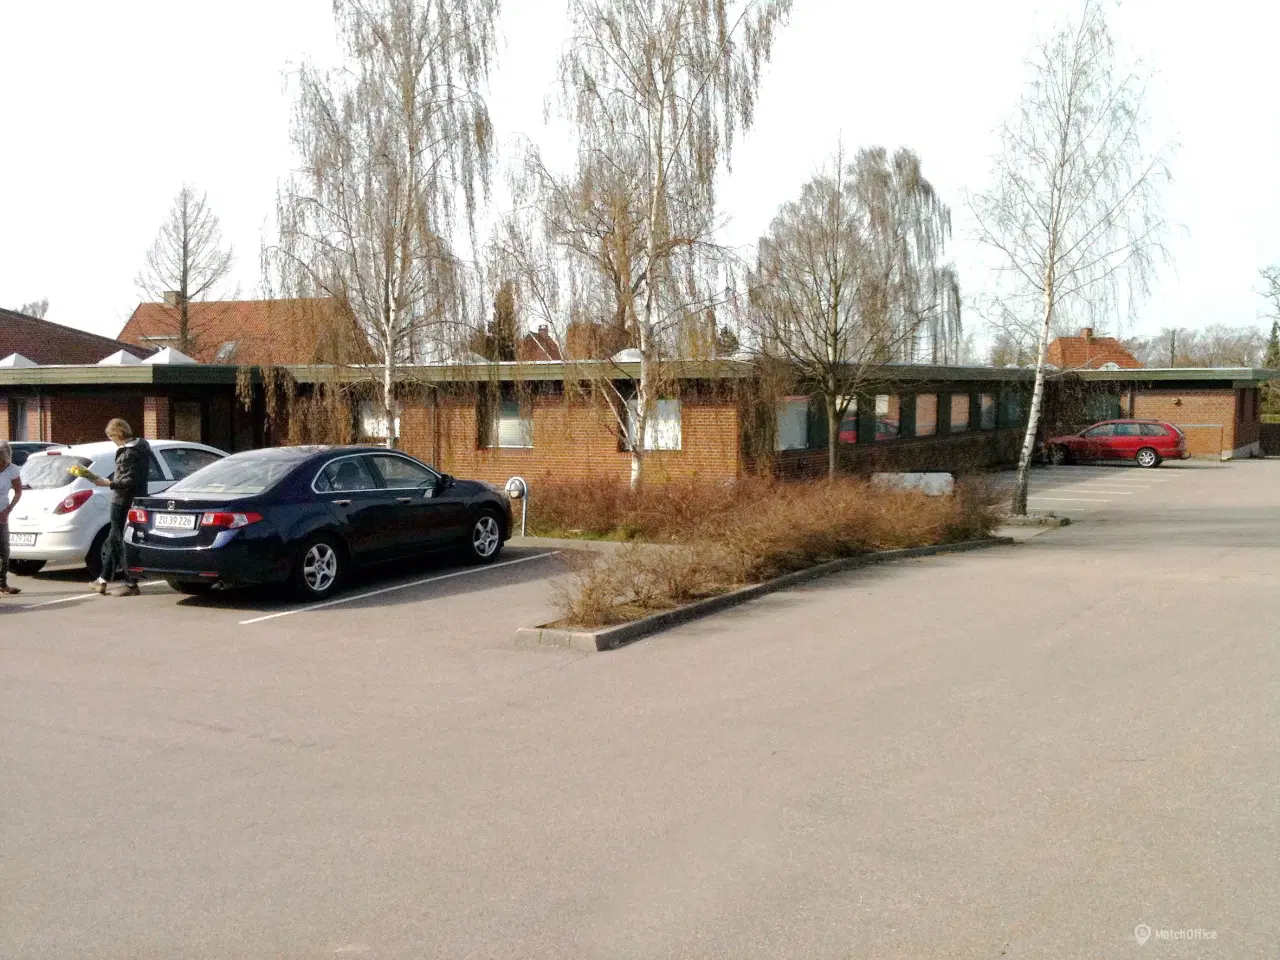 Billede 1 - Kontorlokaler i ejendom beliggende i rolige omgivelser.